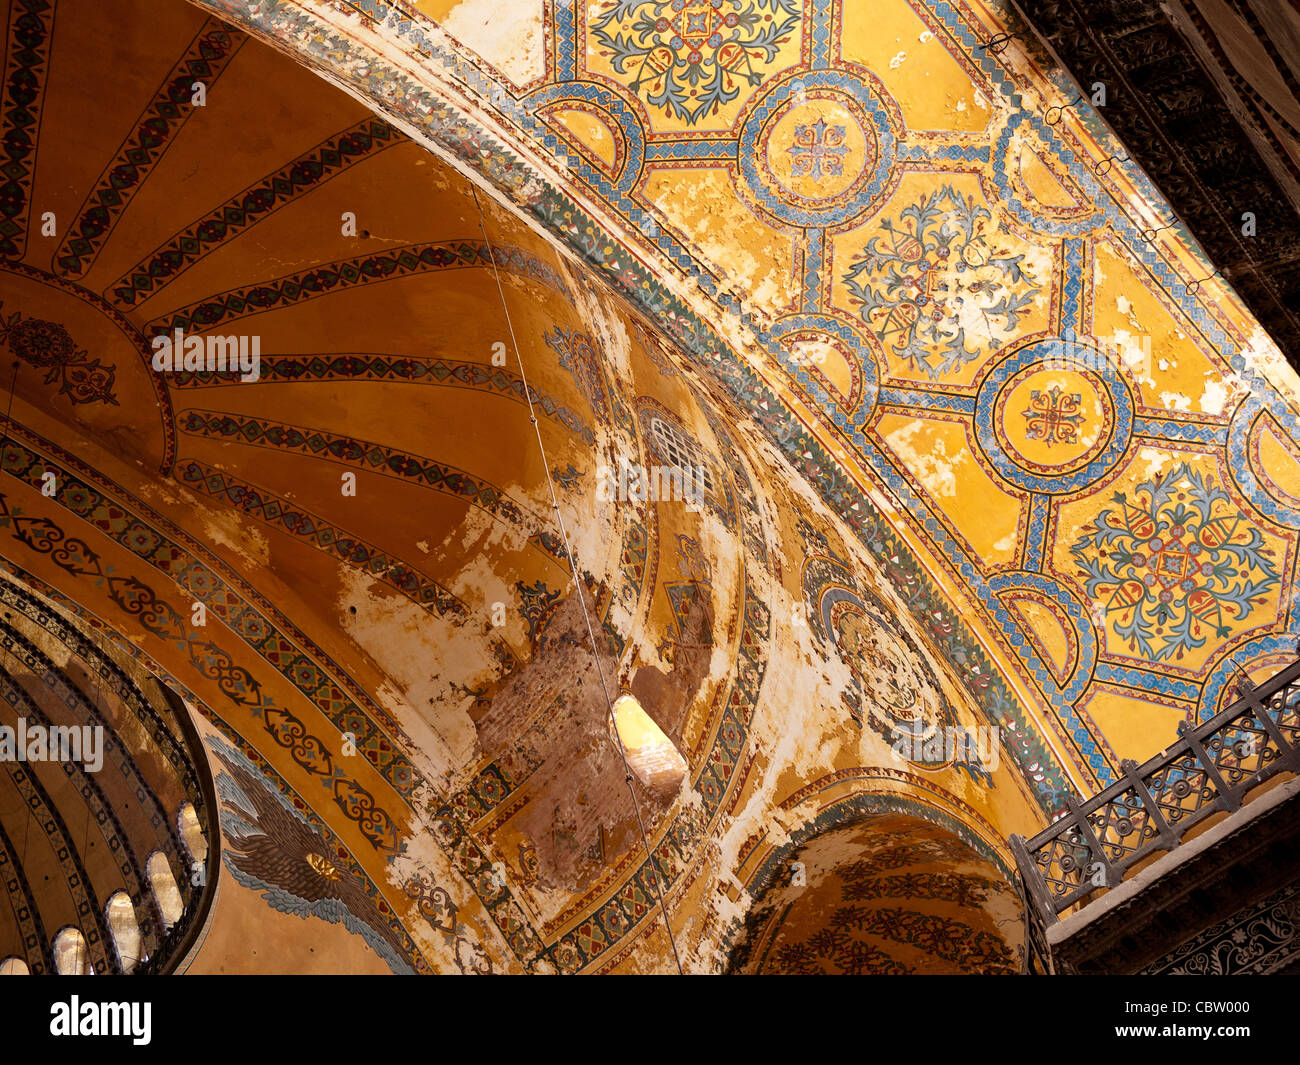 Peeling frescoes on the arches of Hagia Sophia (Aya Sofya) basilica, Sultanahmet, Istanbul, Turkey Stock Photo